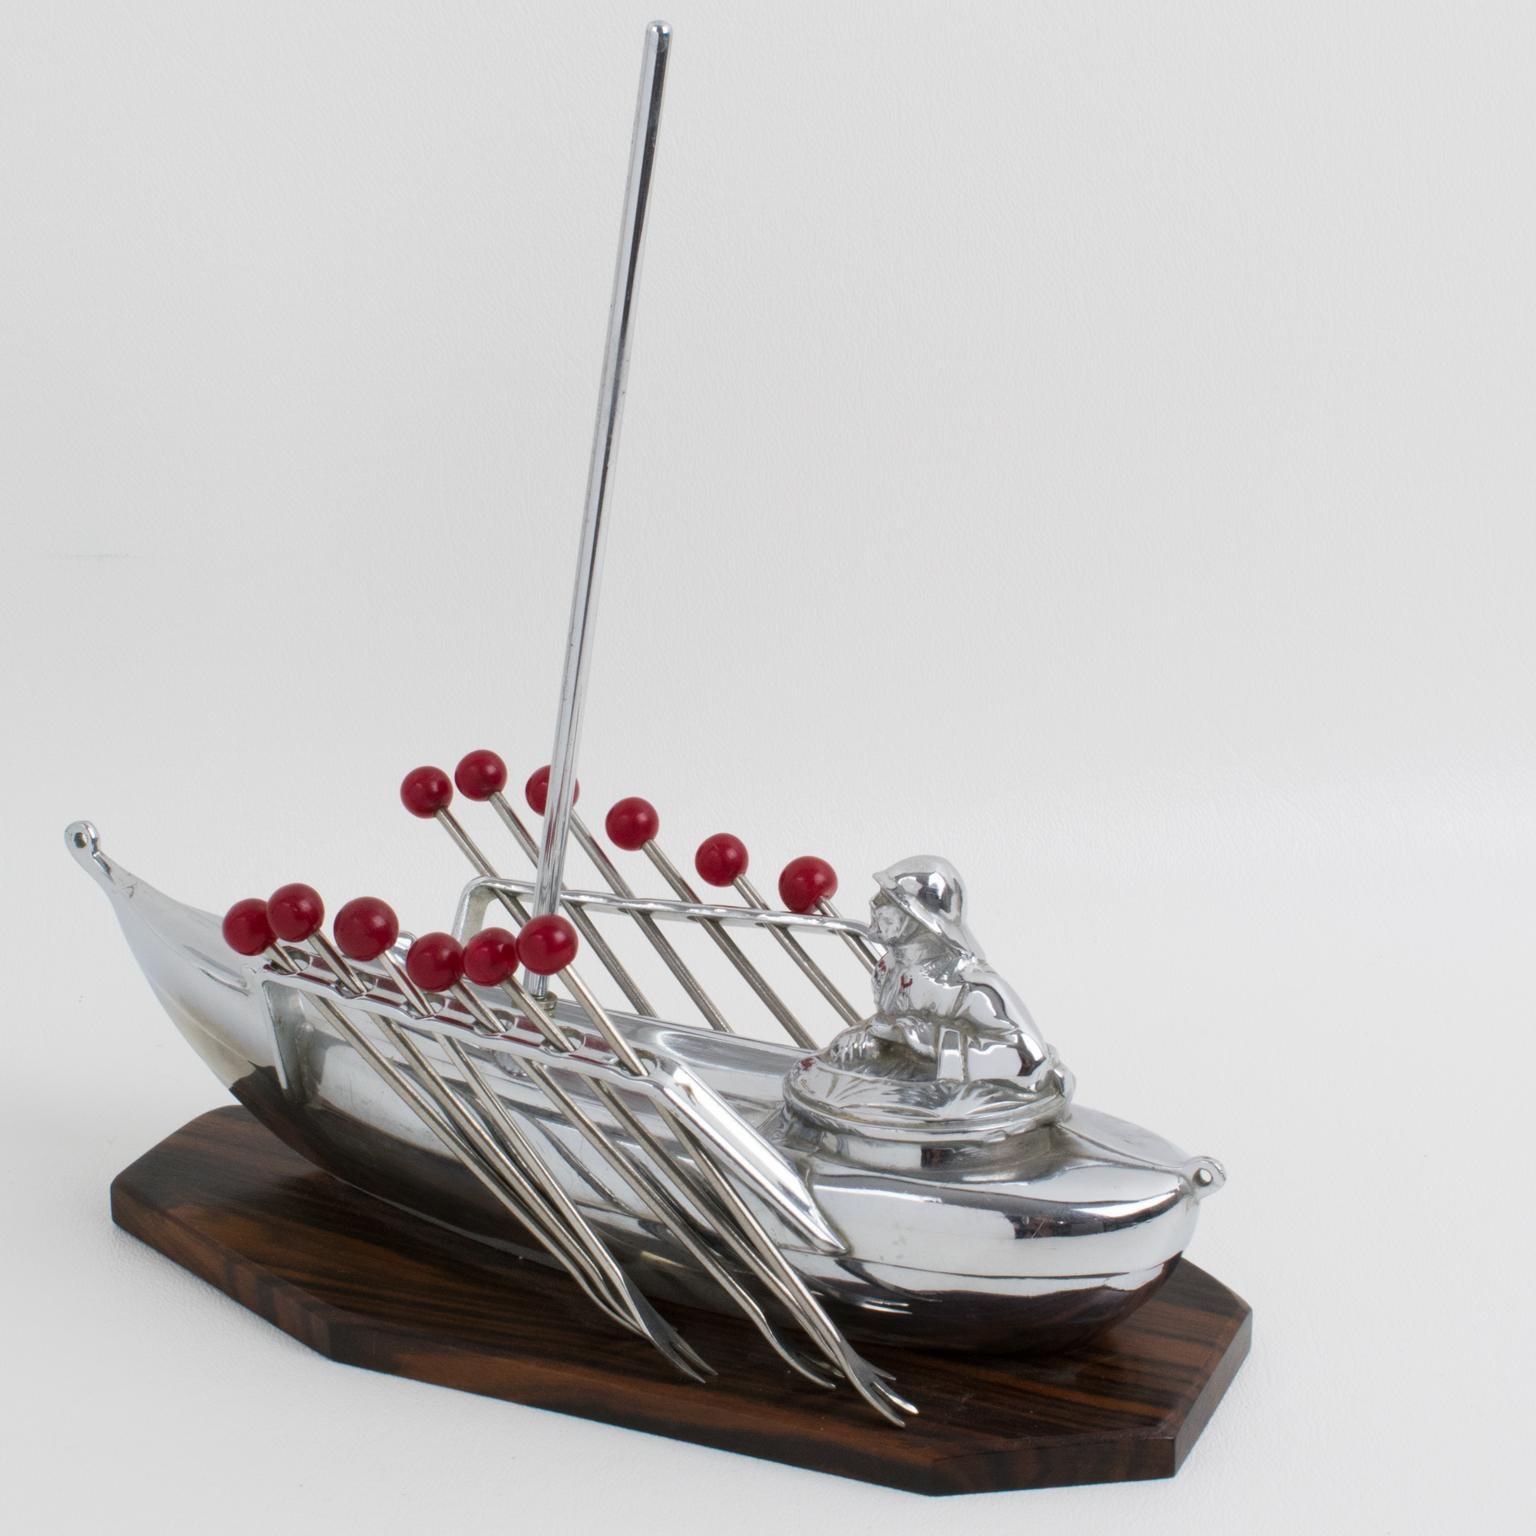 Dieses wunderbare französische Cocktail-Set zeigt ein Miniaturboot mit einem Matrosen. Zwölf Gabeln mit rotem Bakelit-Finial können von jeder Seite des Segelboots abgenommen und als Cocktail-Picker für Manhattans, Martinis oder andere Cocktails, die